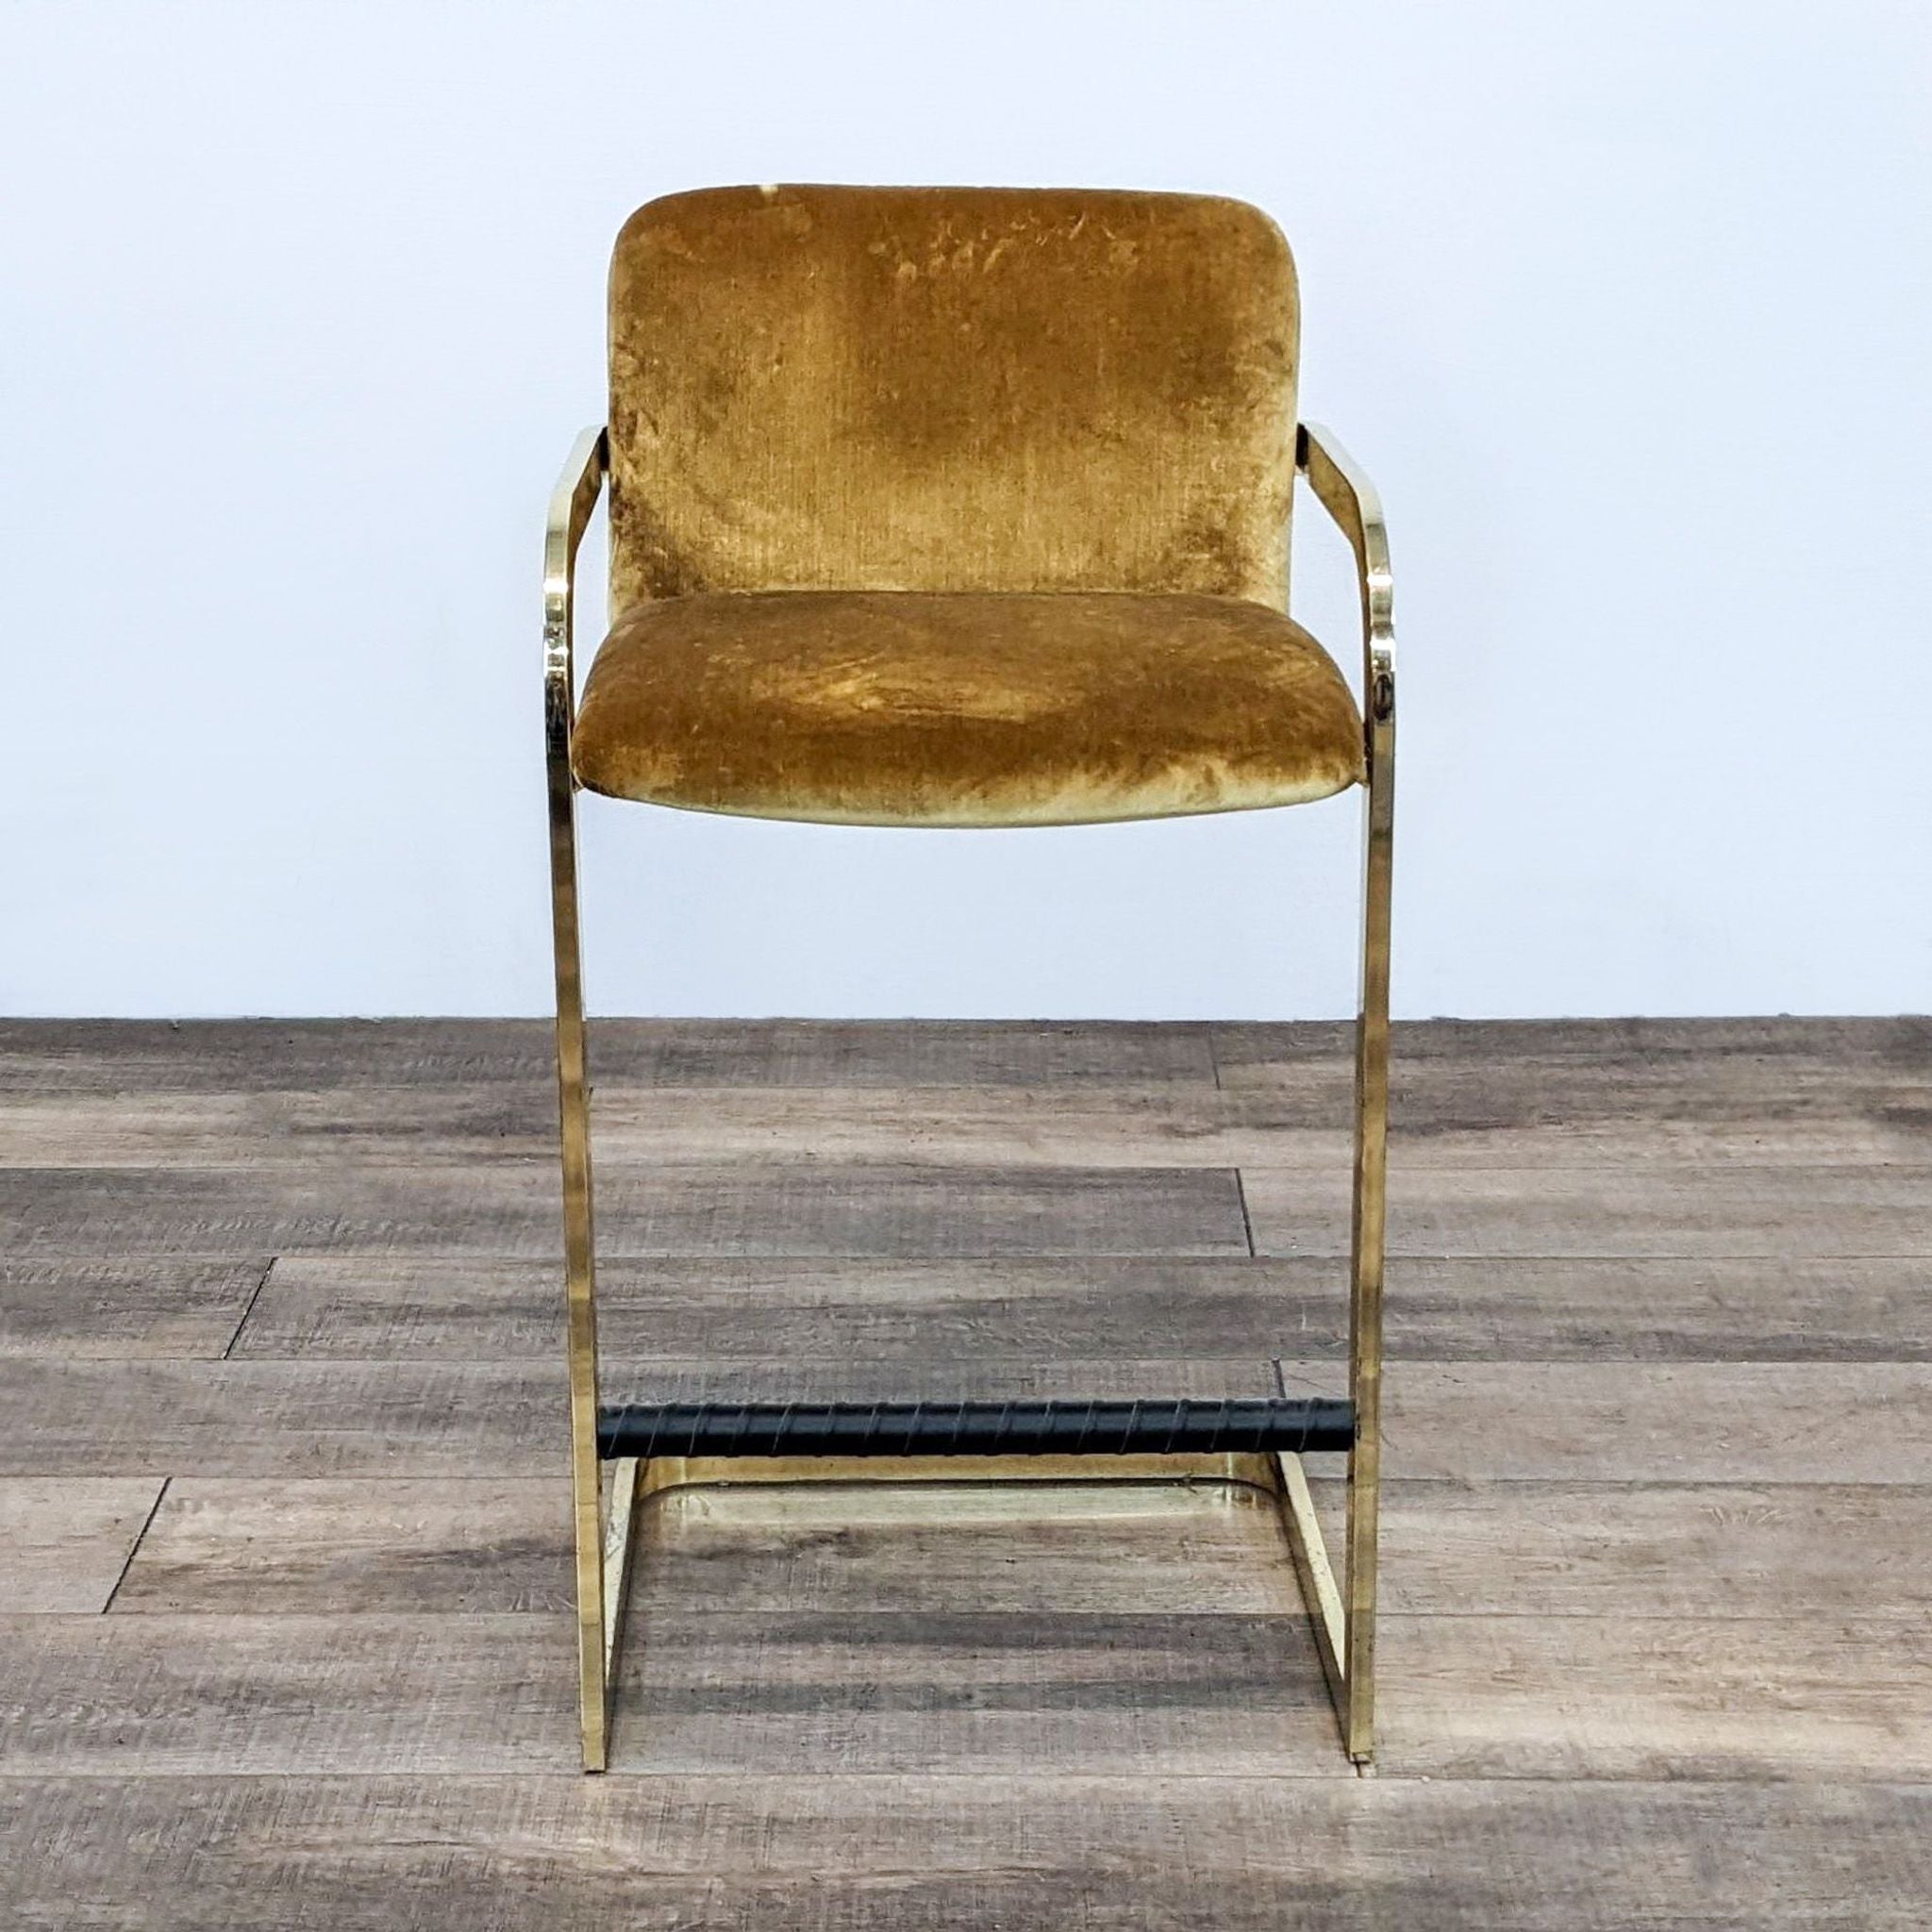 Milo Baughman gold velvet stool with brass frame on wooden floor.